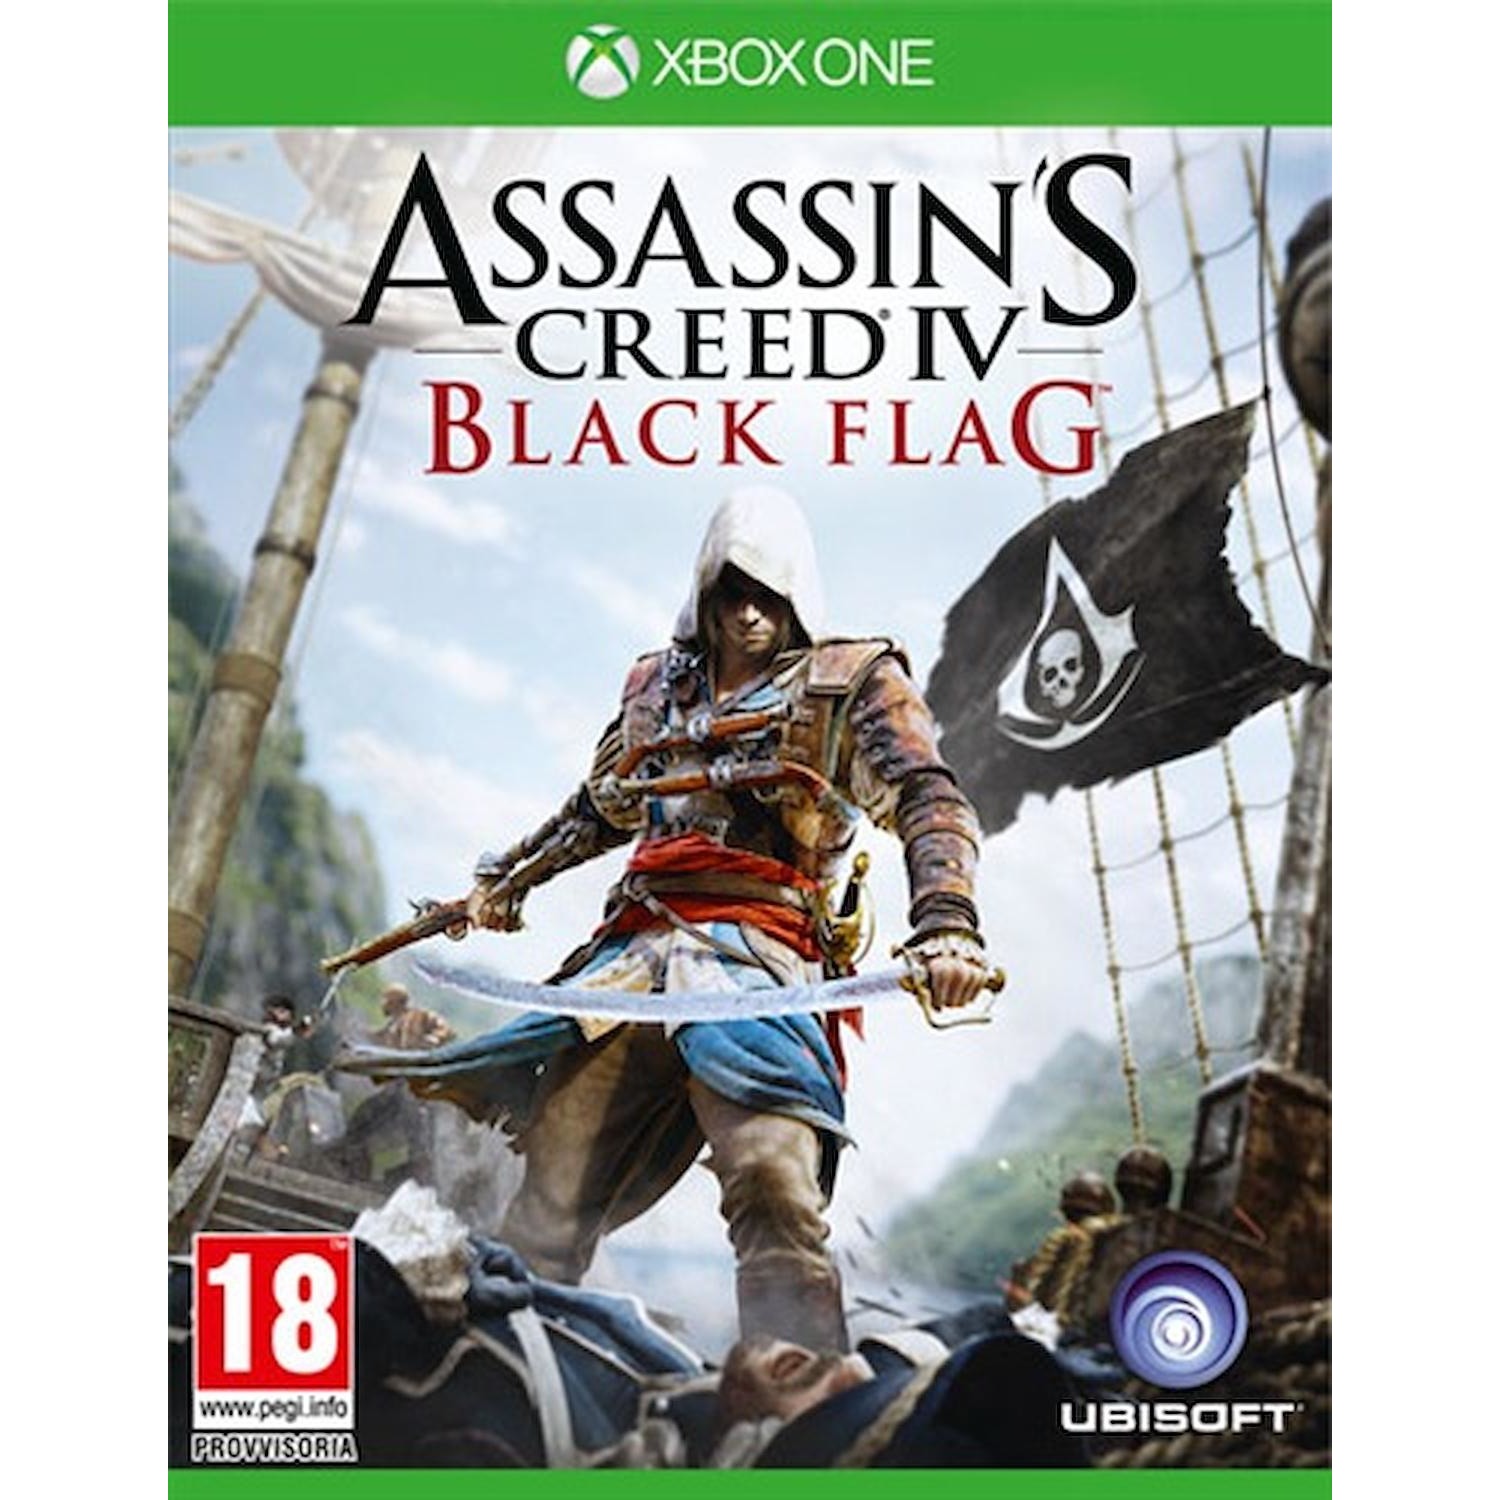 Immagine per Gioco XBOX ONE Assassins Creed 4 Black Flag da DIMOStore